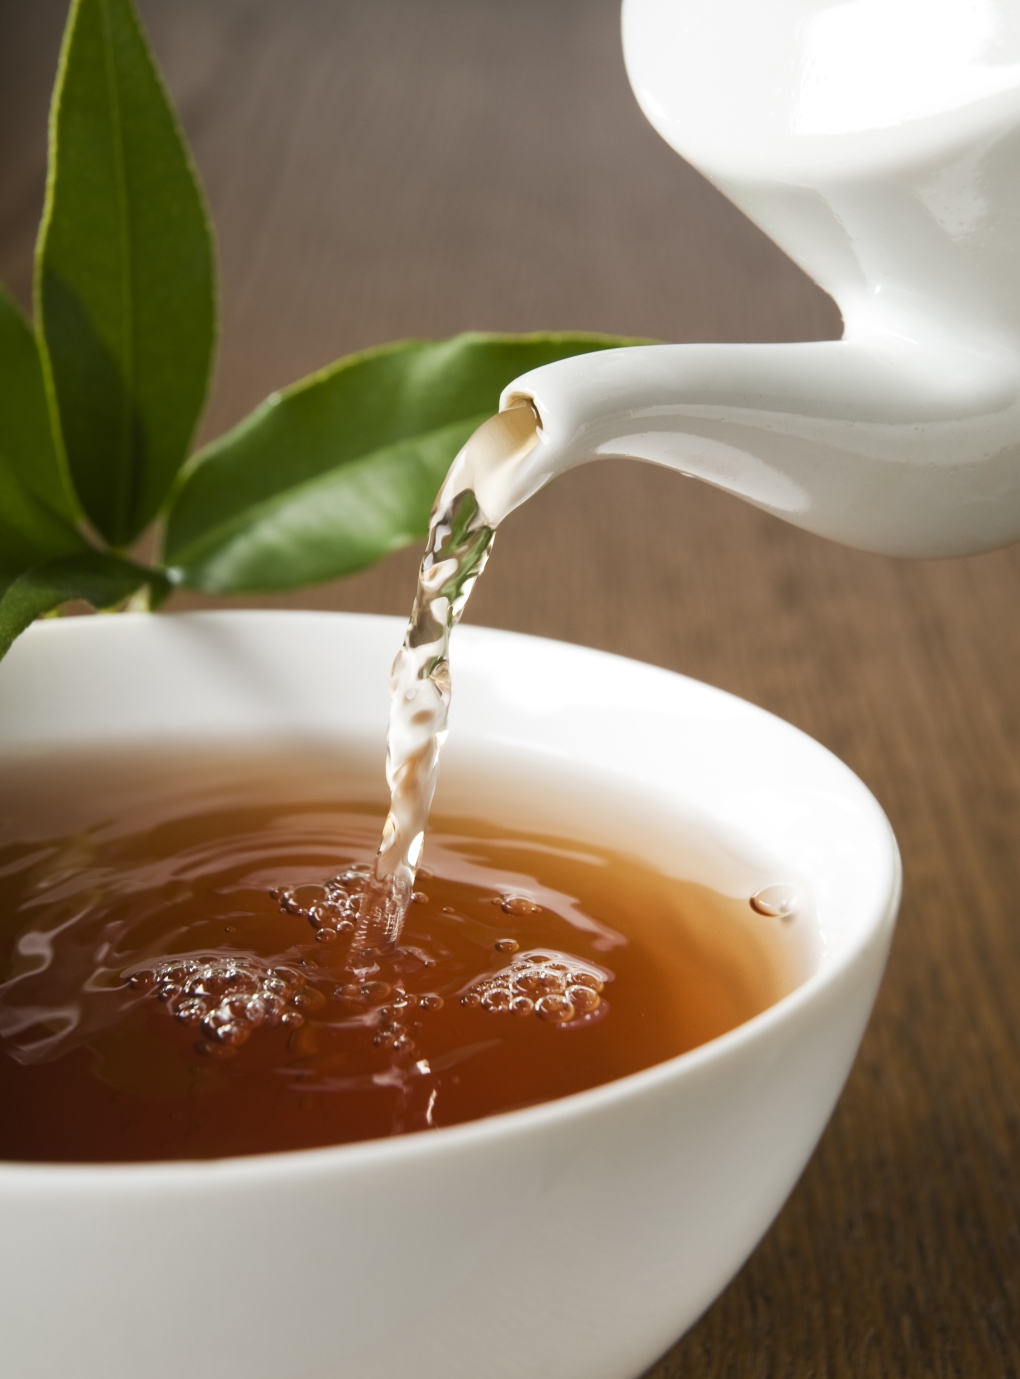 Herbal tea for better sleep